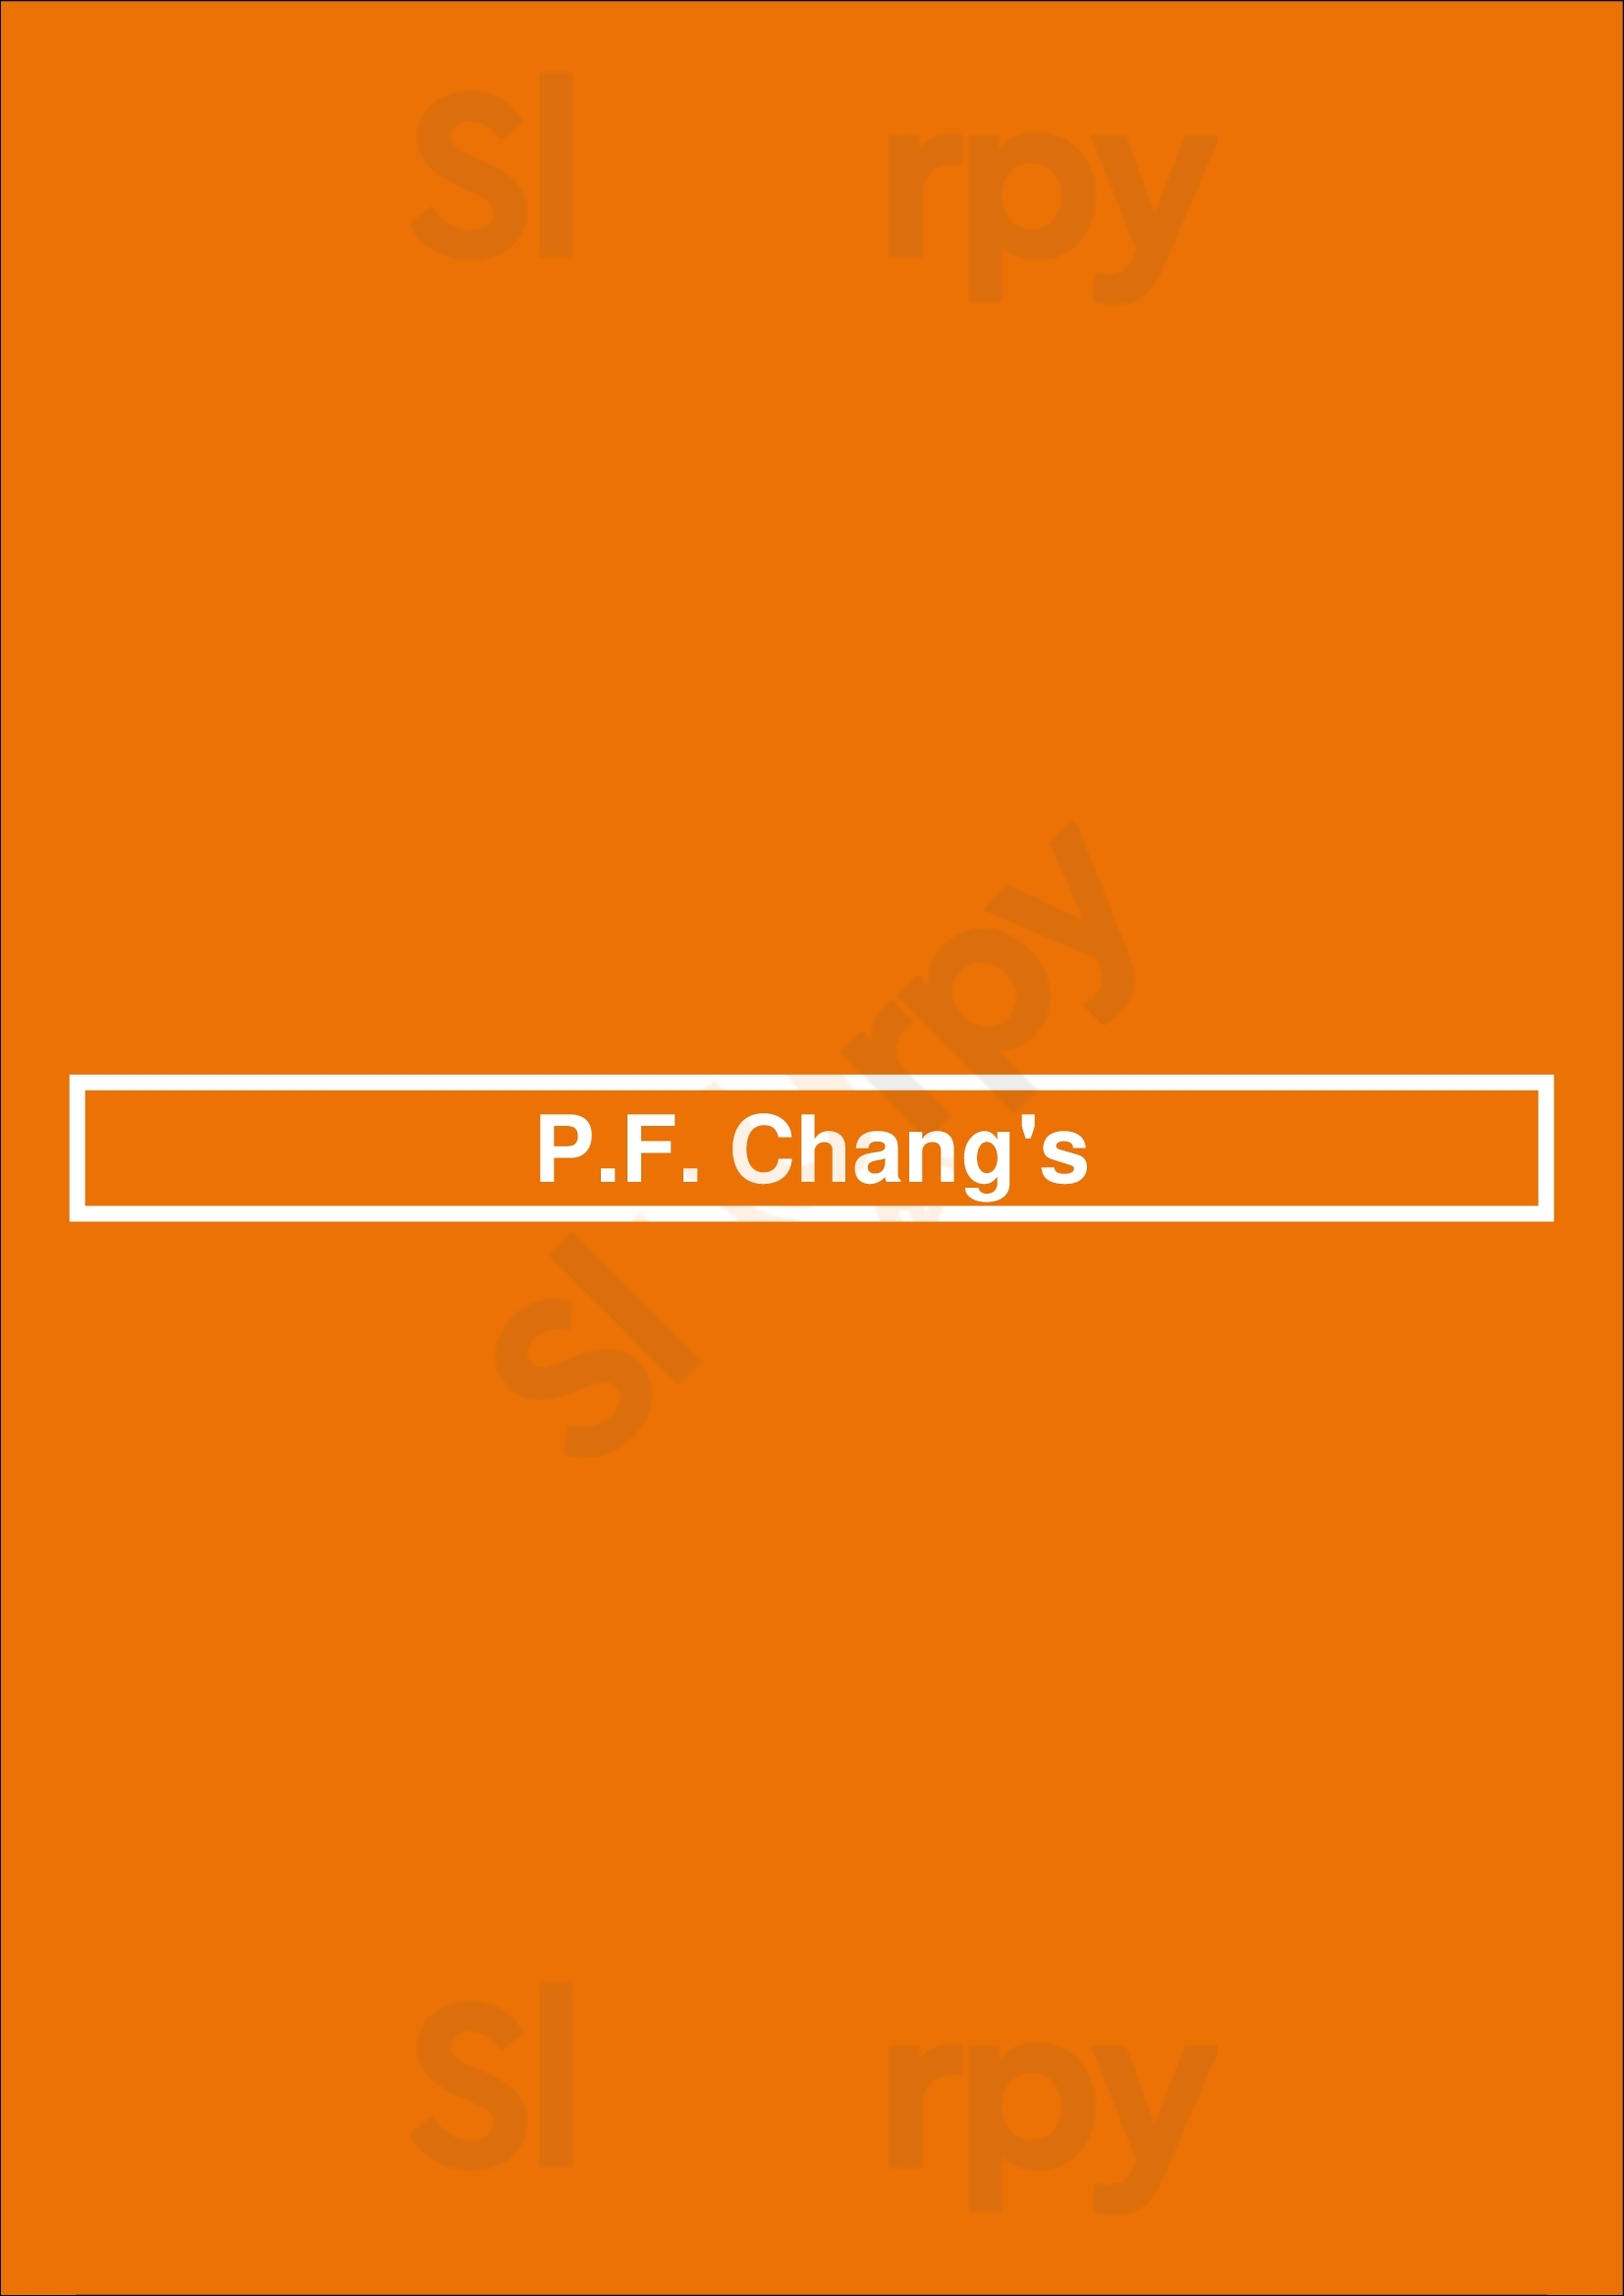 P.f. Chang's Richmond Menu - 1